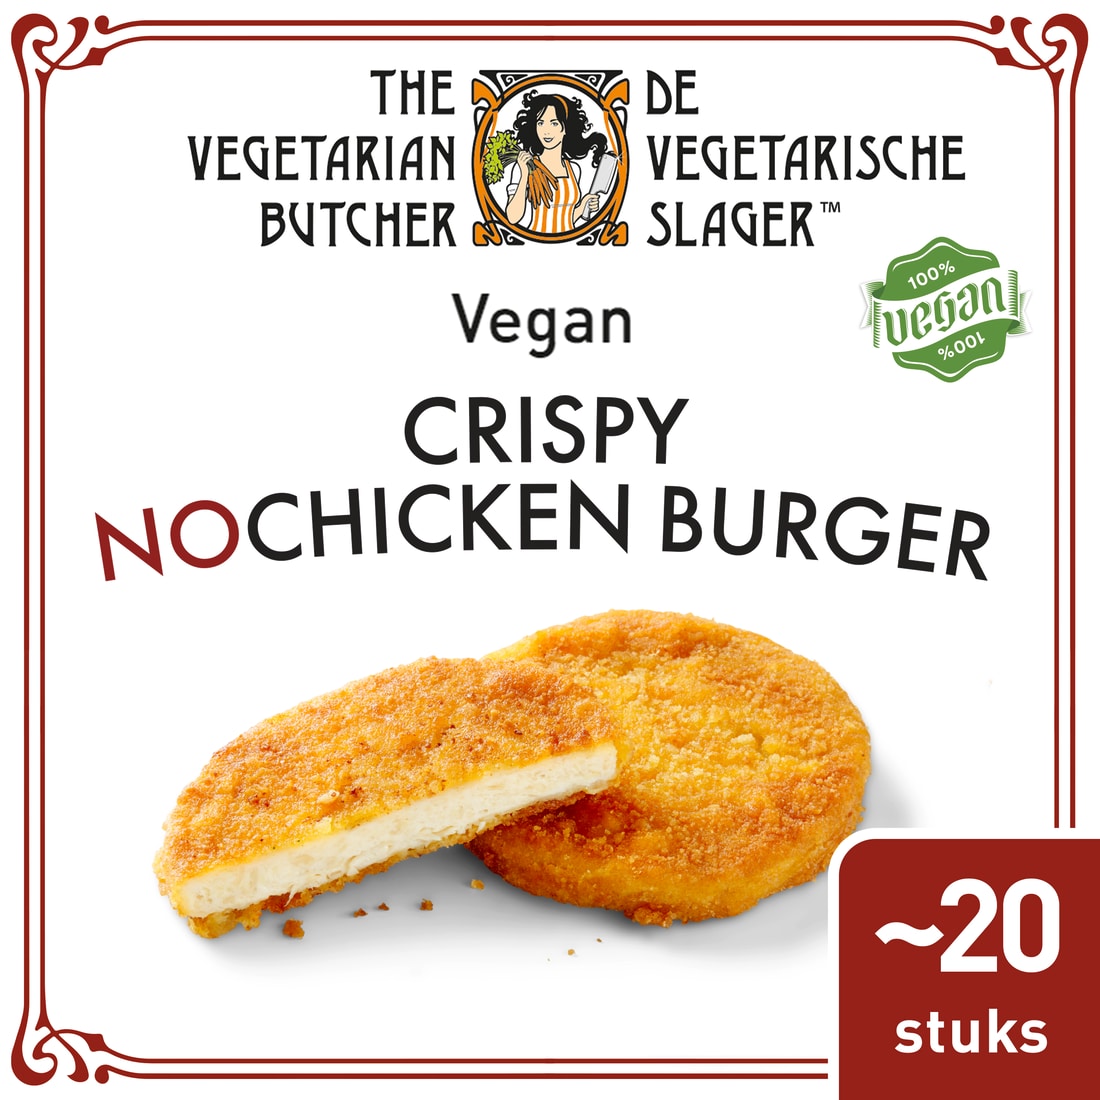 The Vegetarian Butcher Crispy NoChicken Burger 1.8 kg - Burger végétarien, fait à partir des meilleurs ingrédients